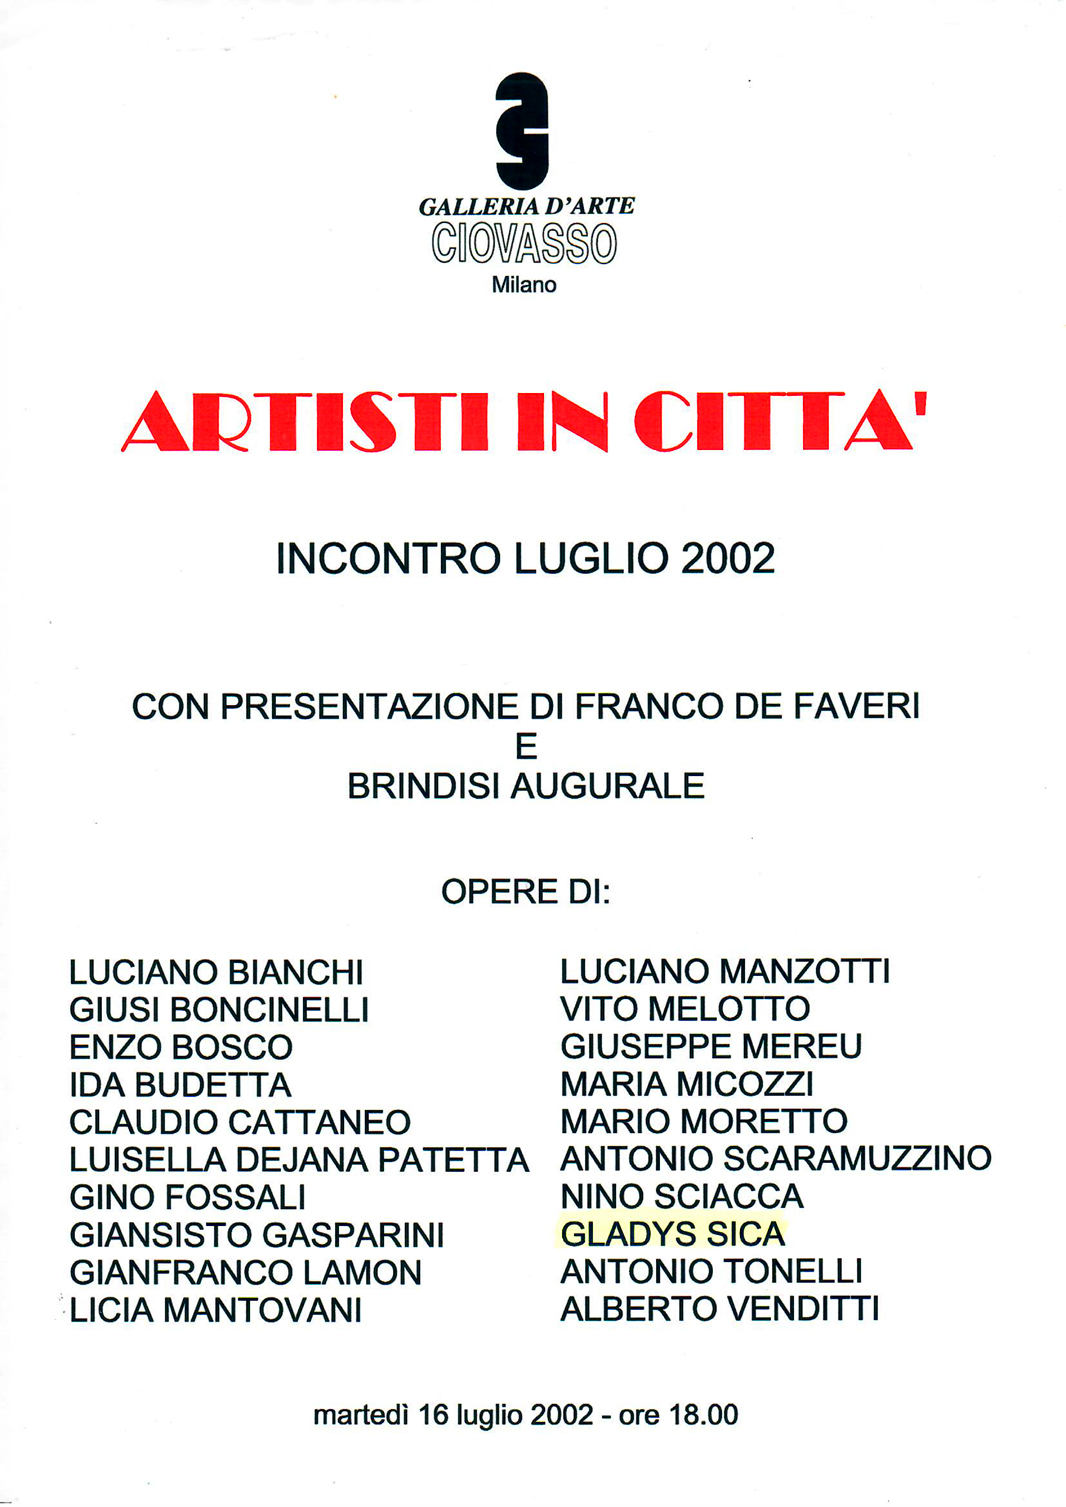 2002 - Collettiva, 'Artisti in Città', Galleria d'arte -Ciovasso-, fra gli artisti Vito Melotto, Antonio Tonelli, ecc. Milano.